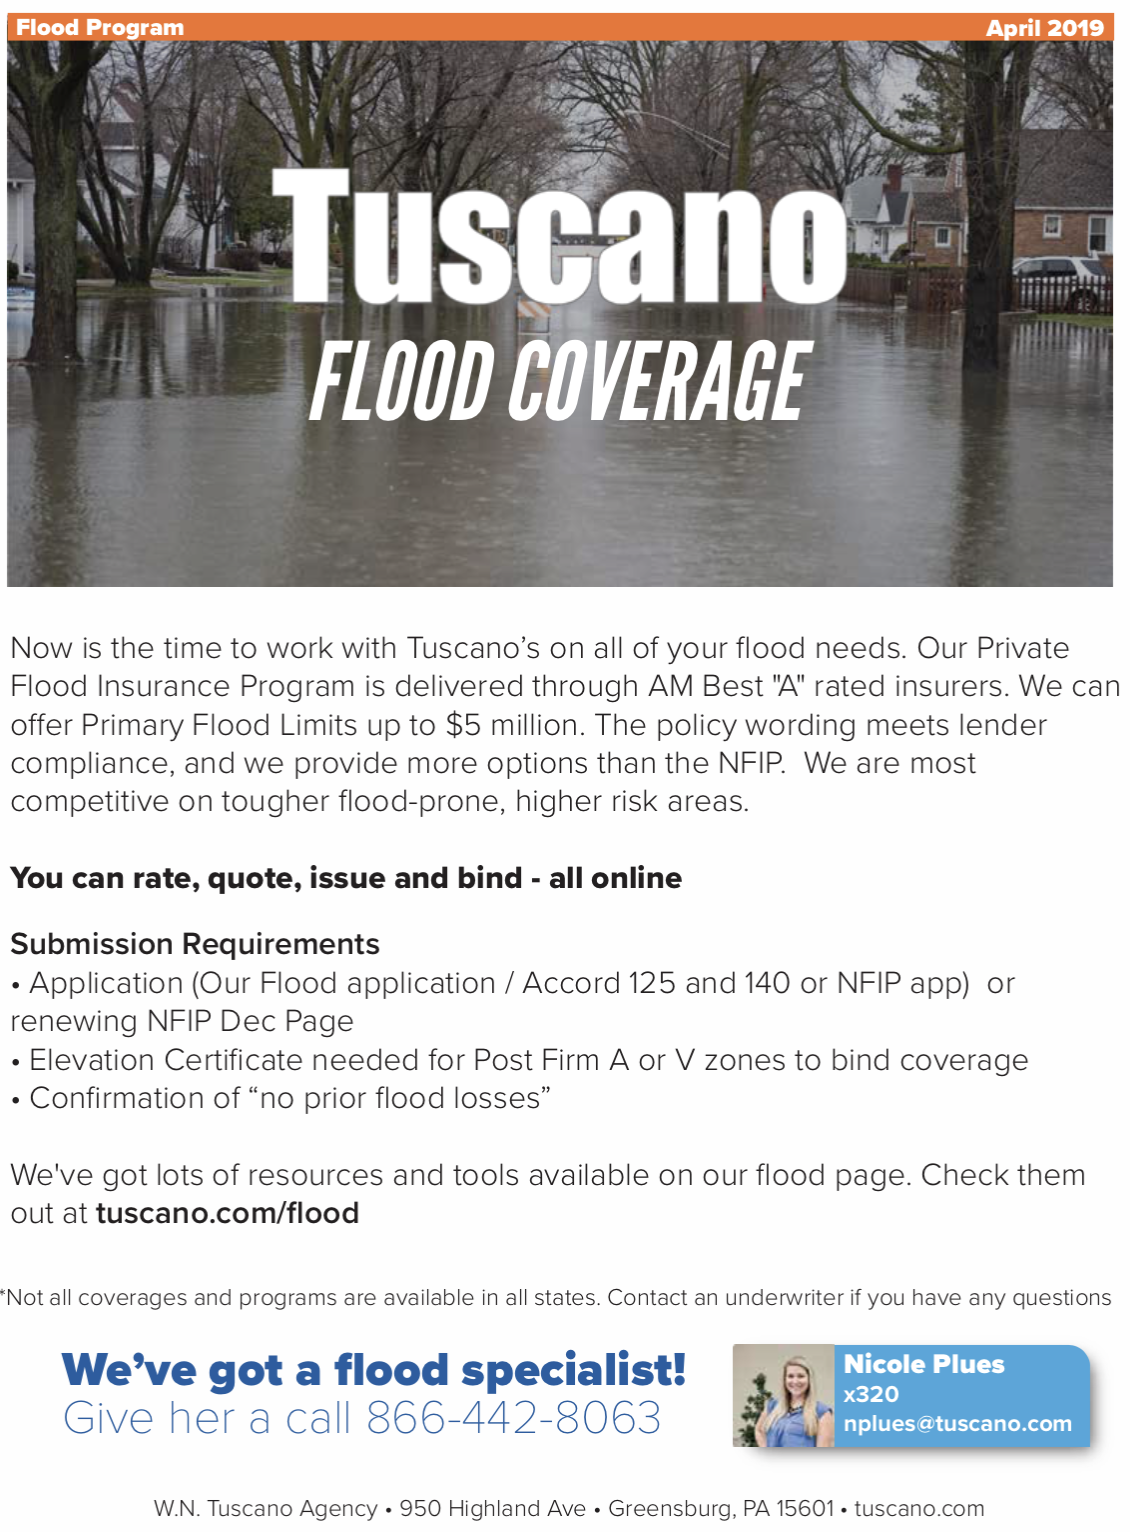 Flood Coverage Flyer